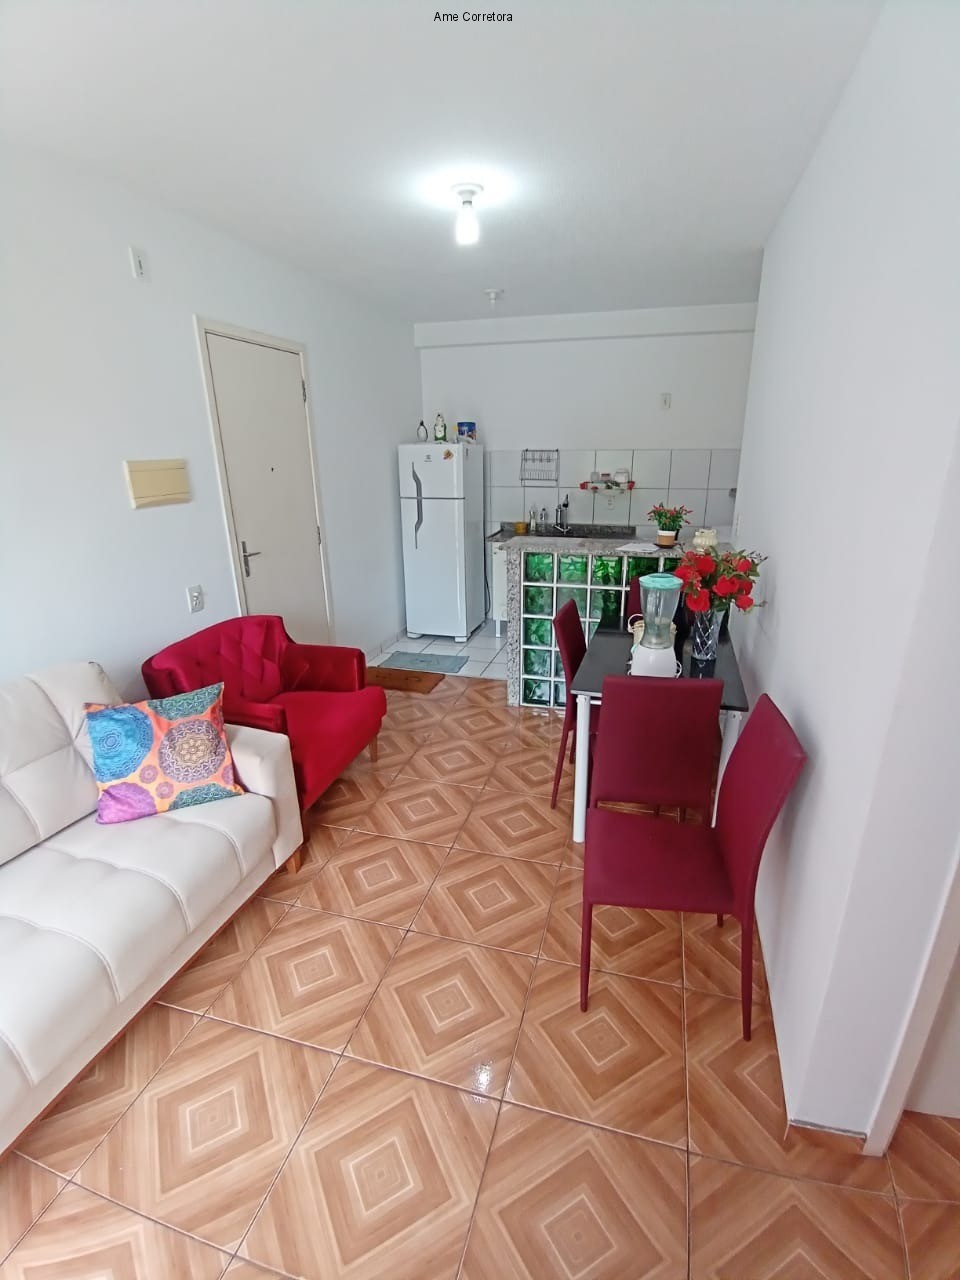 FOTO 04 - Apartamento 2 quartos à venda Rio de Janeiro,RJ - R$ 150.000 - AP00435 - 4